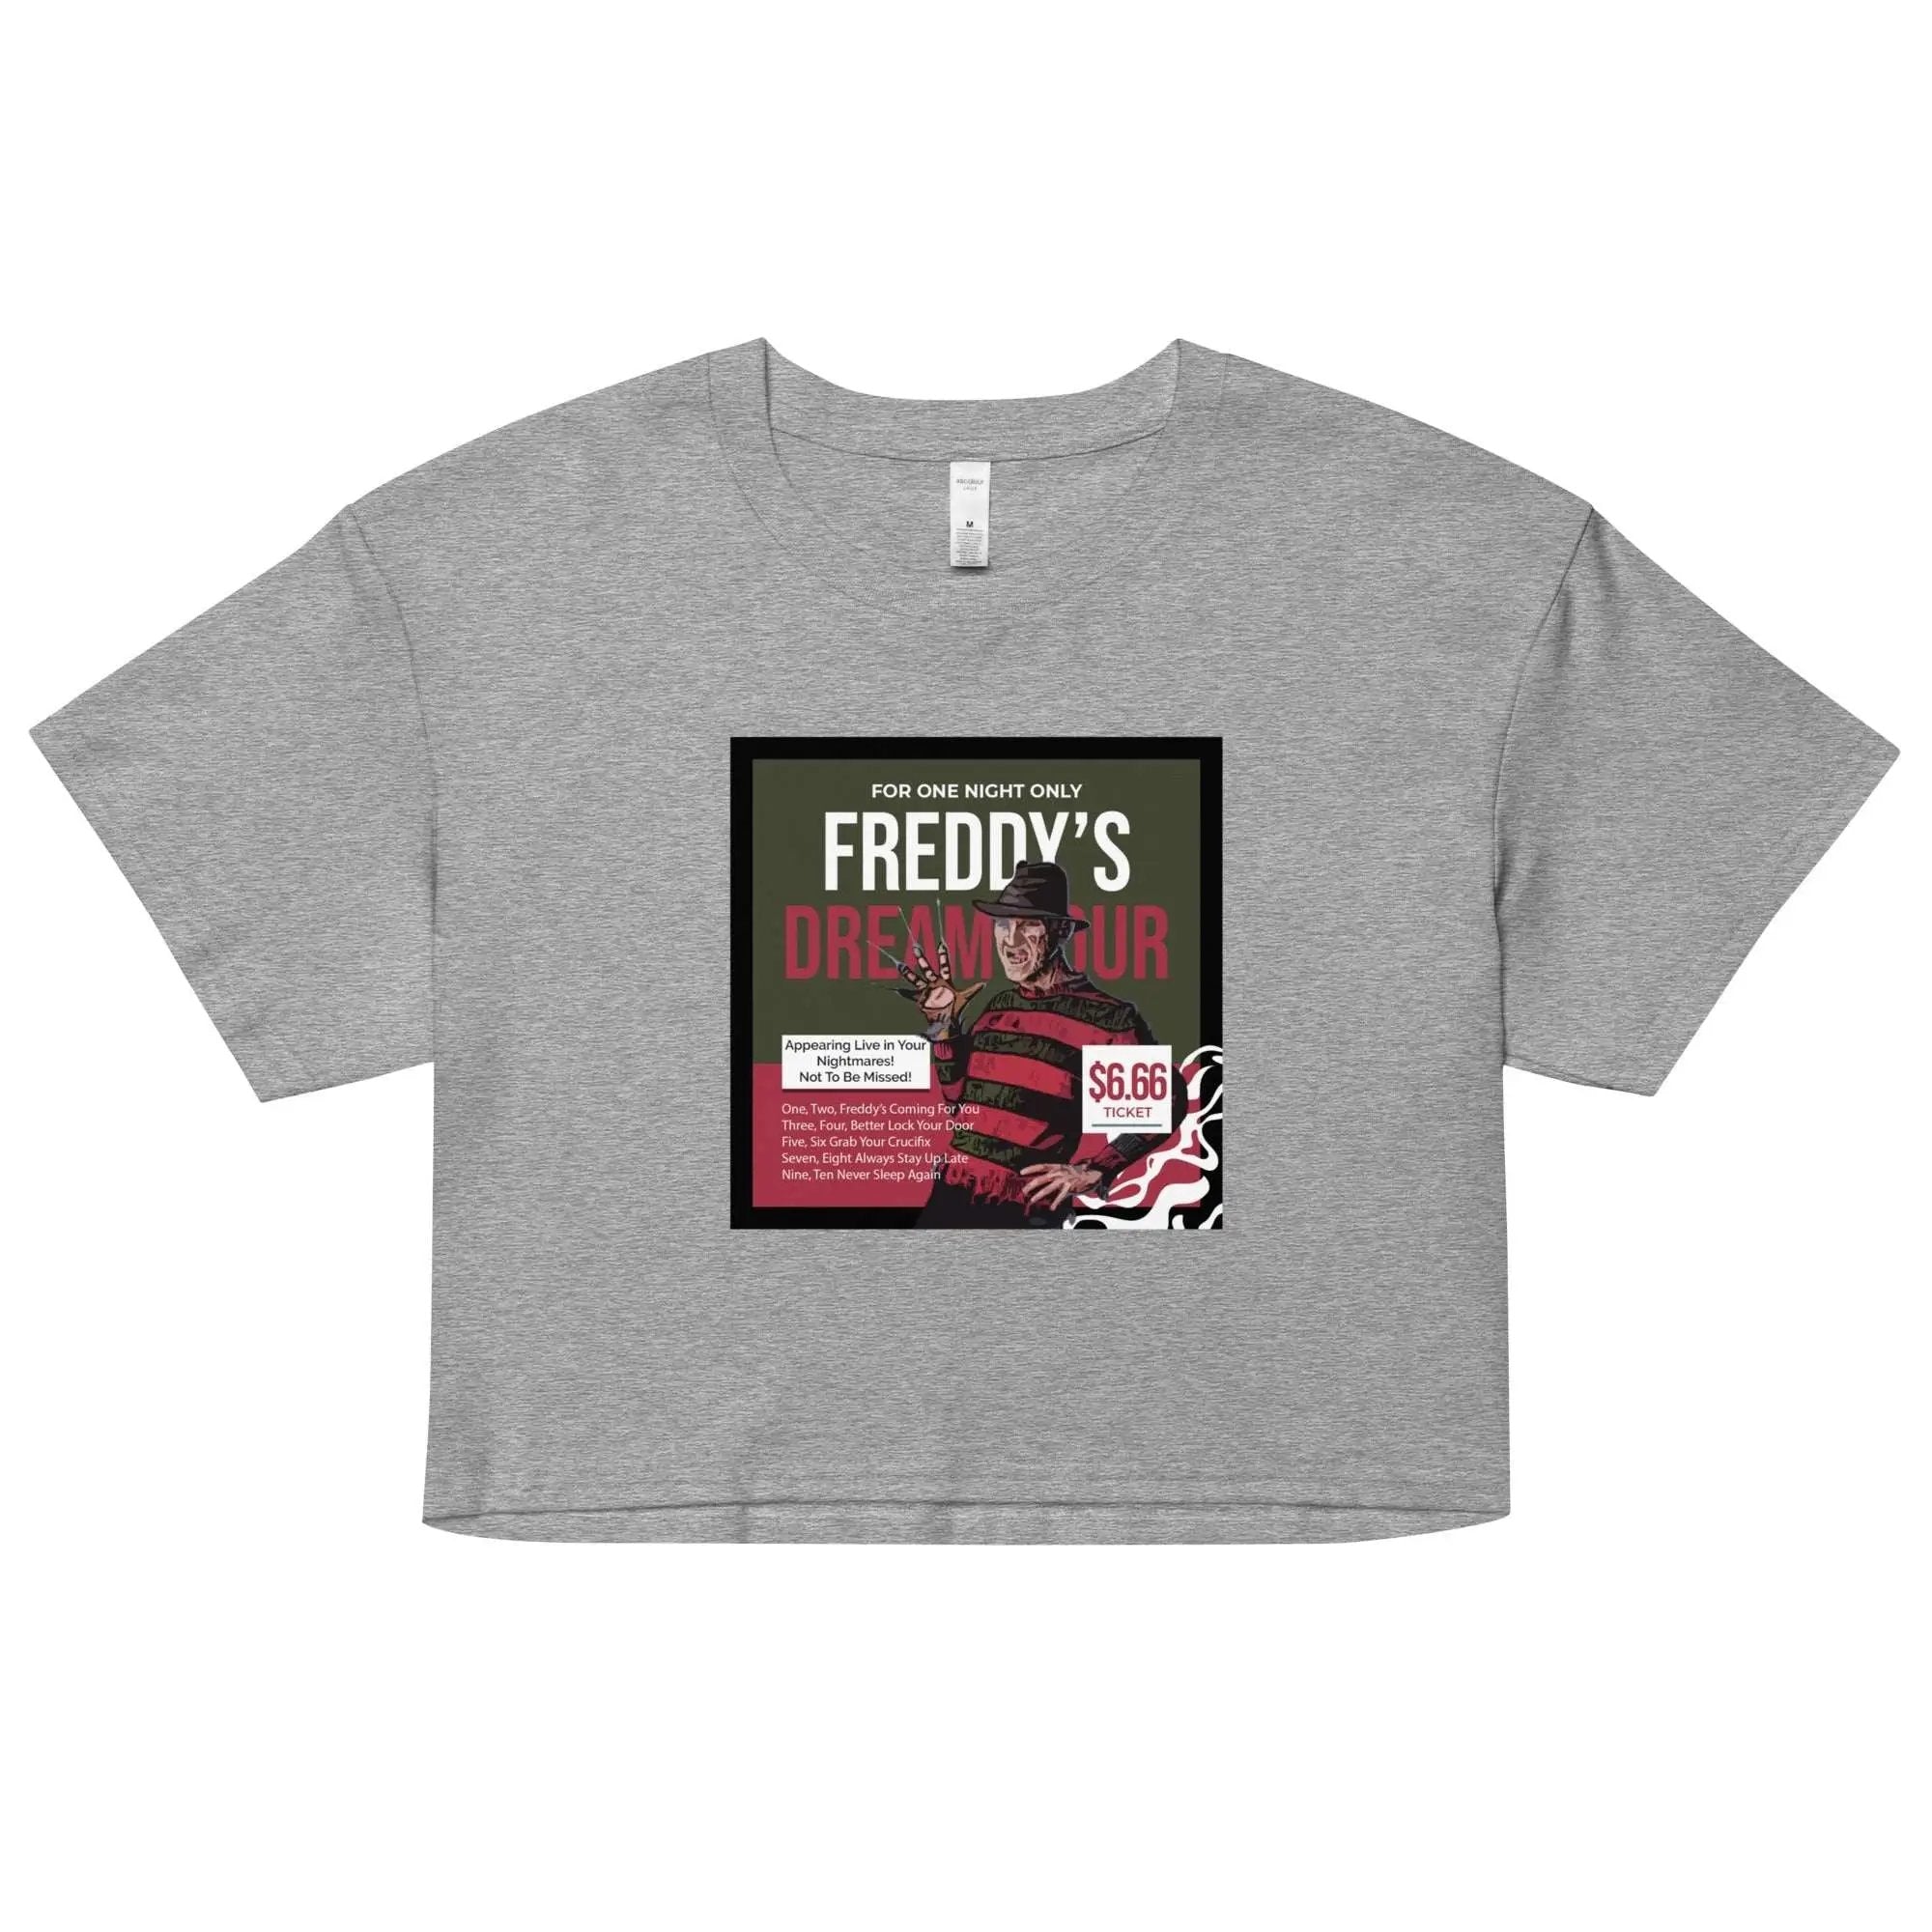 Freddy's Freddy's Dream Tour Women’s crop top